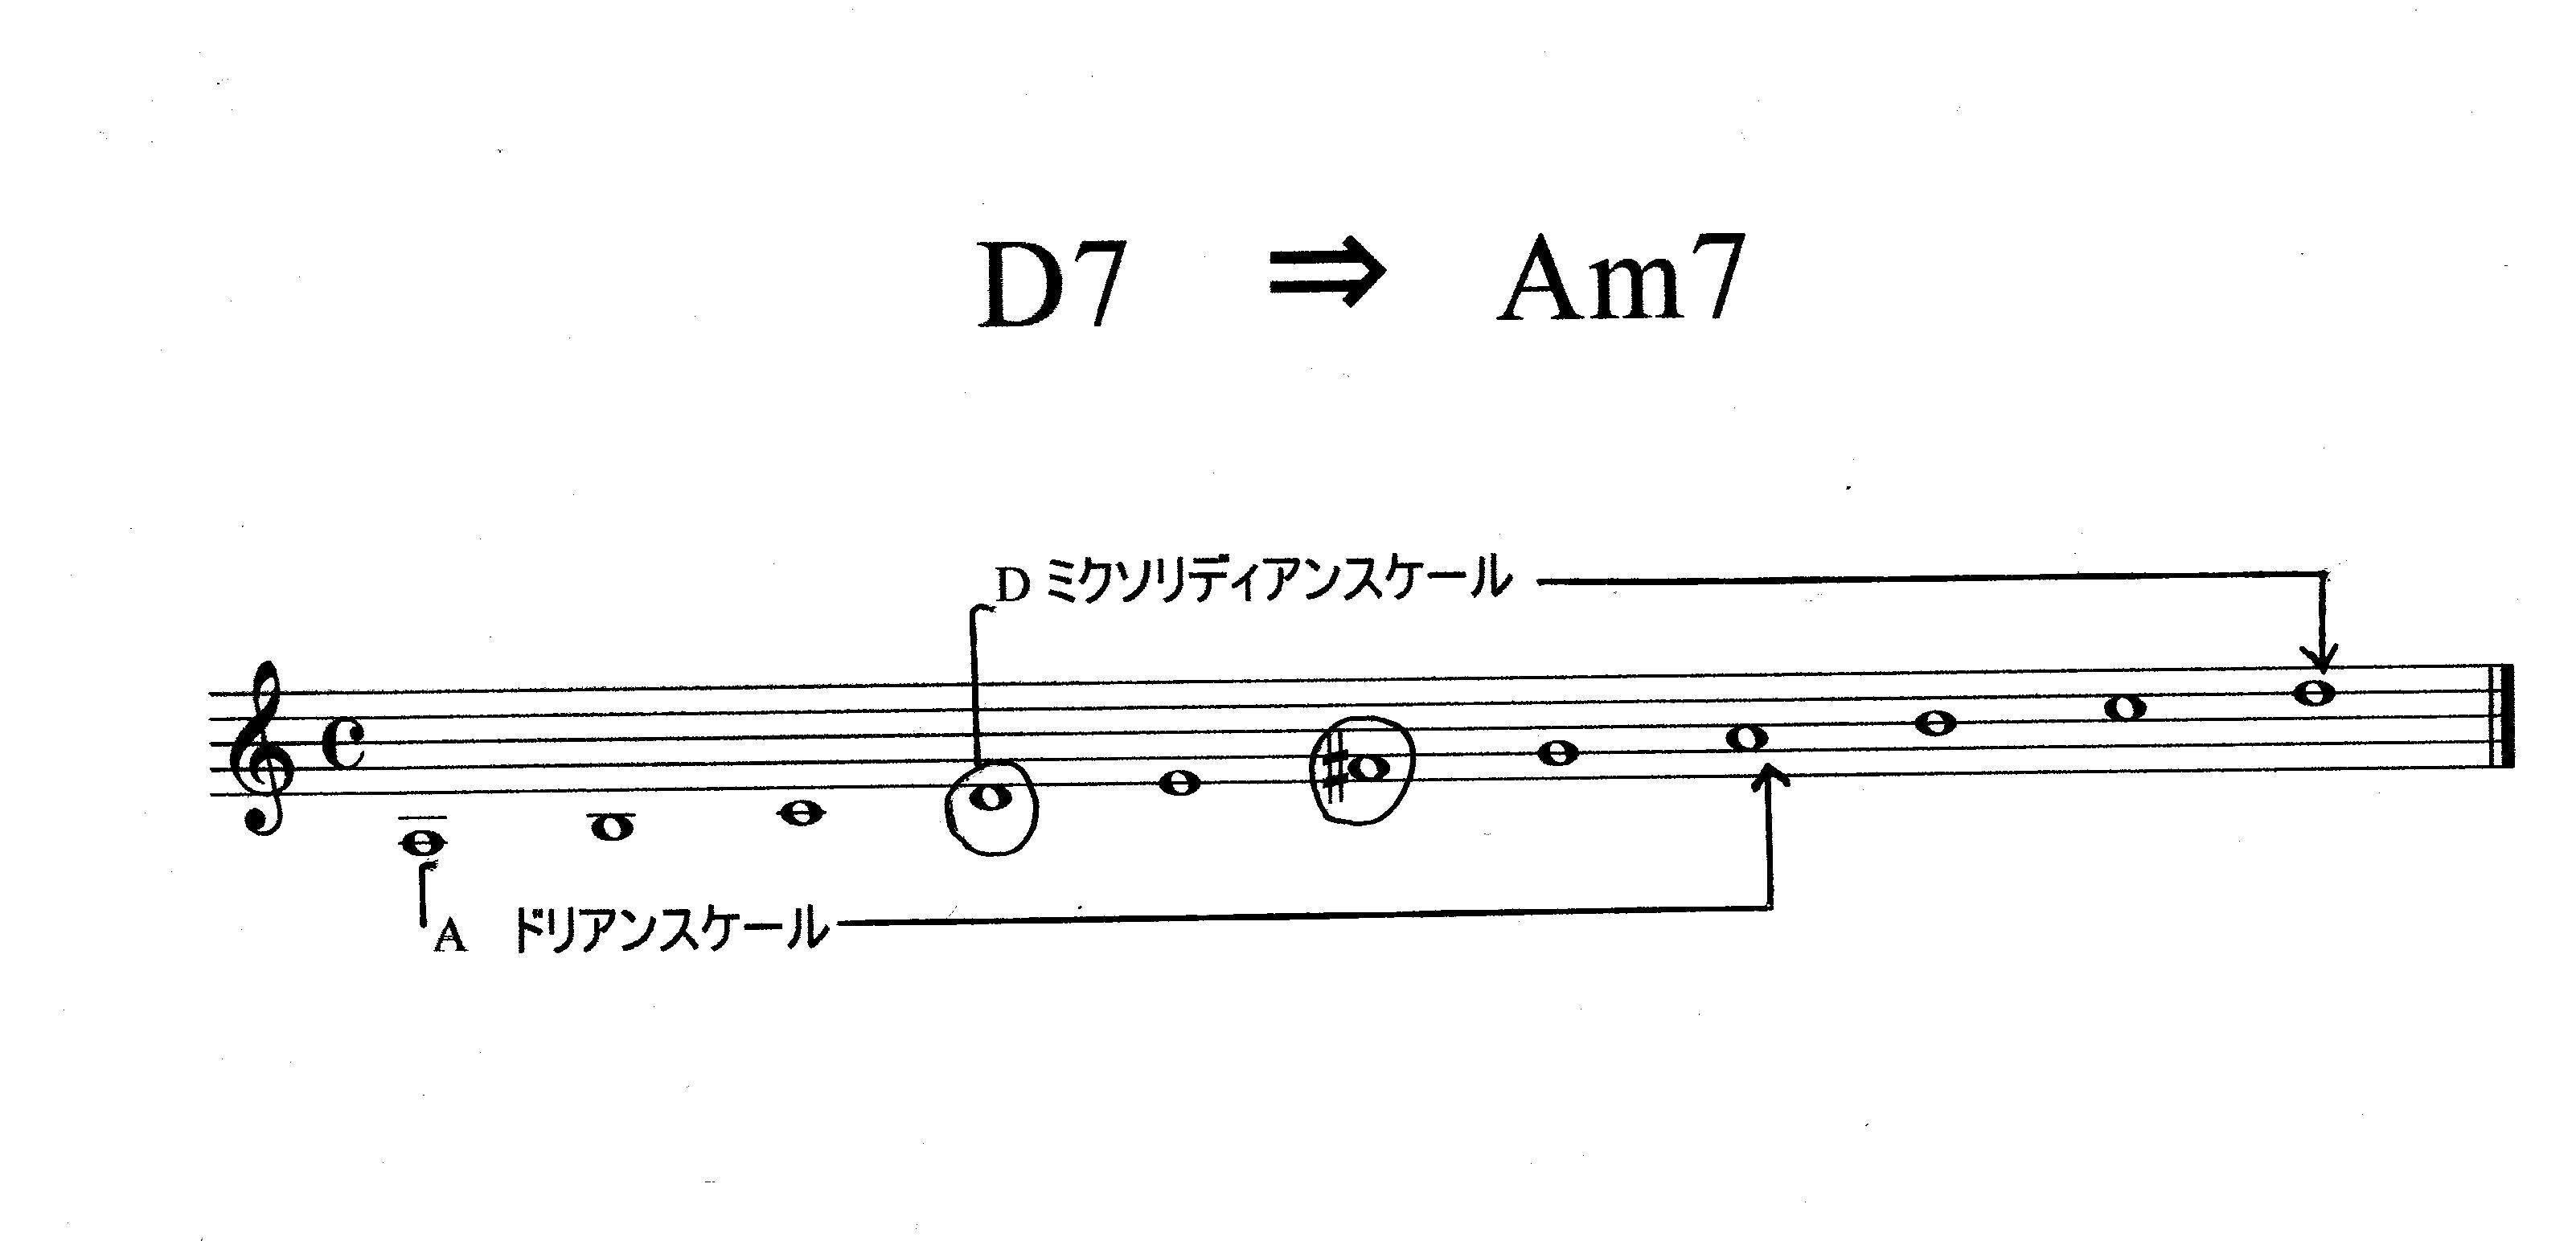 D7 ⇒ Am7